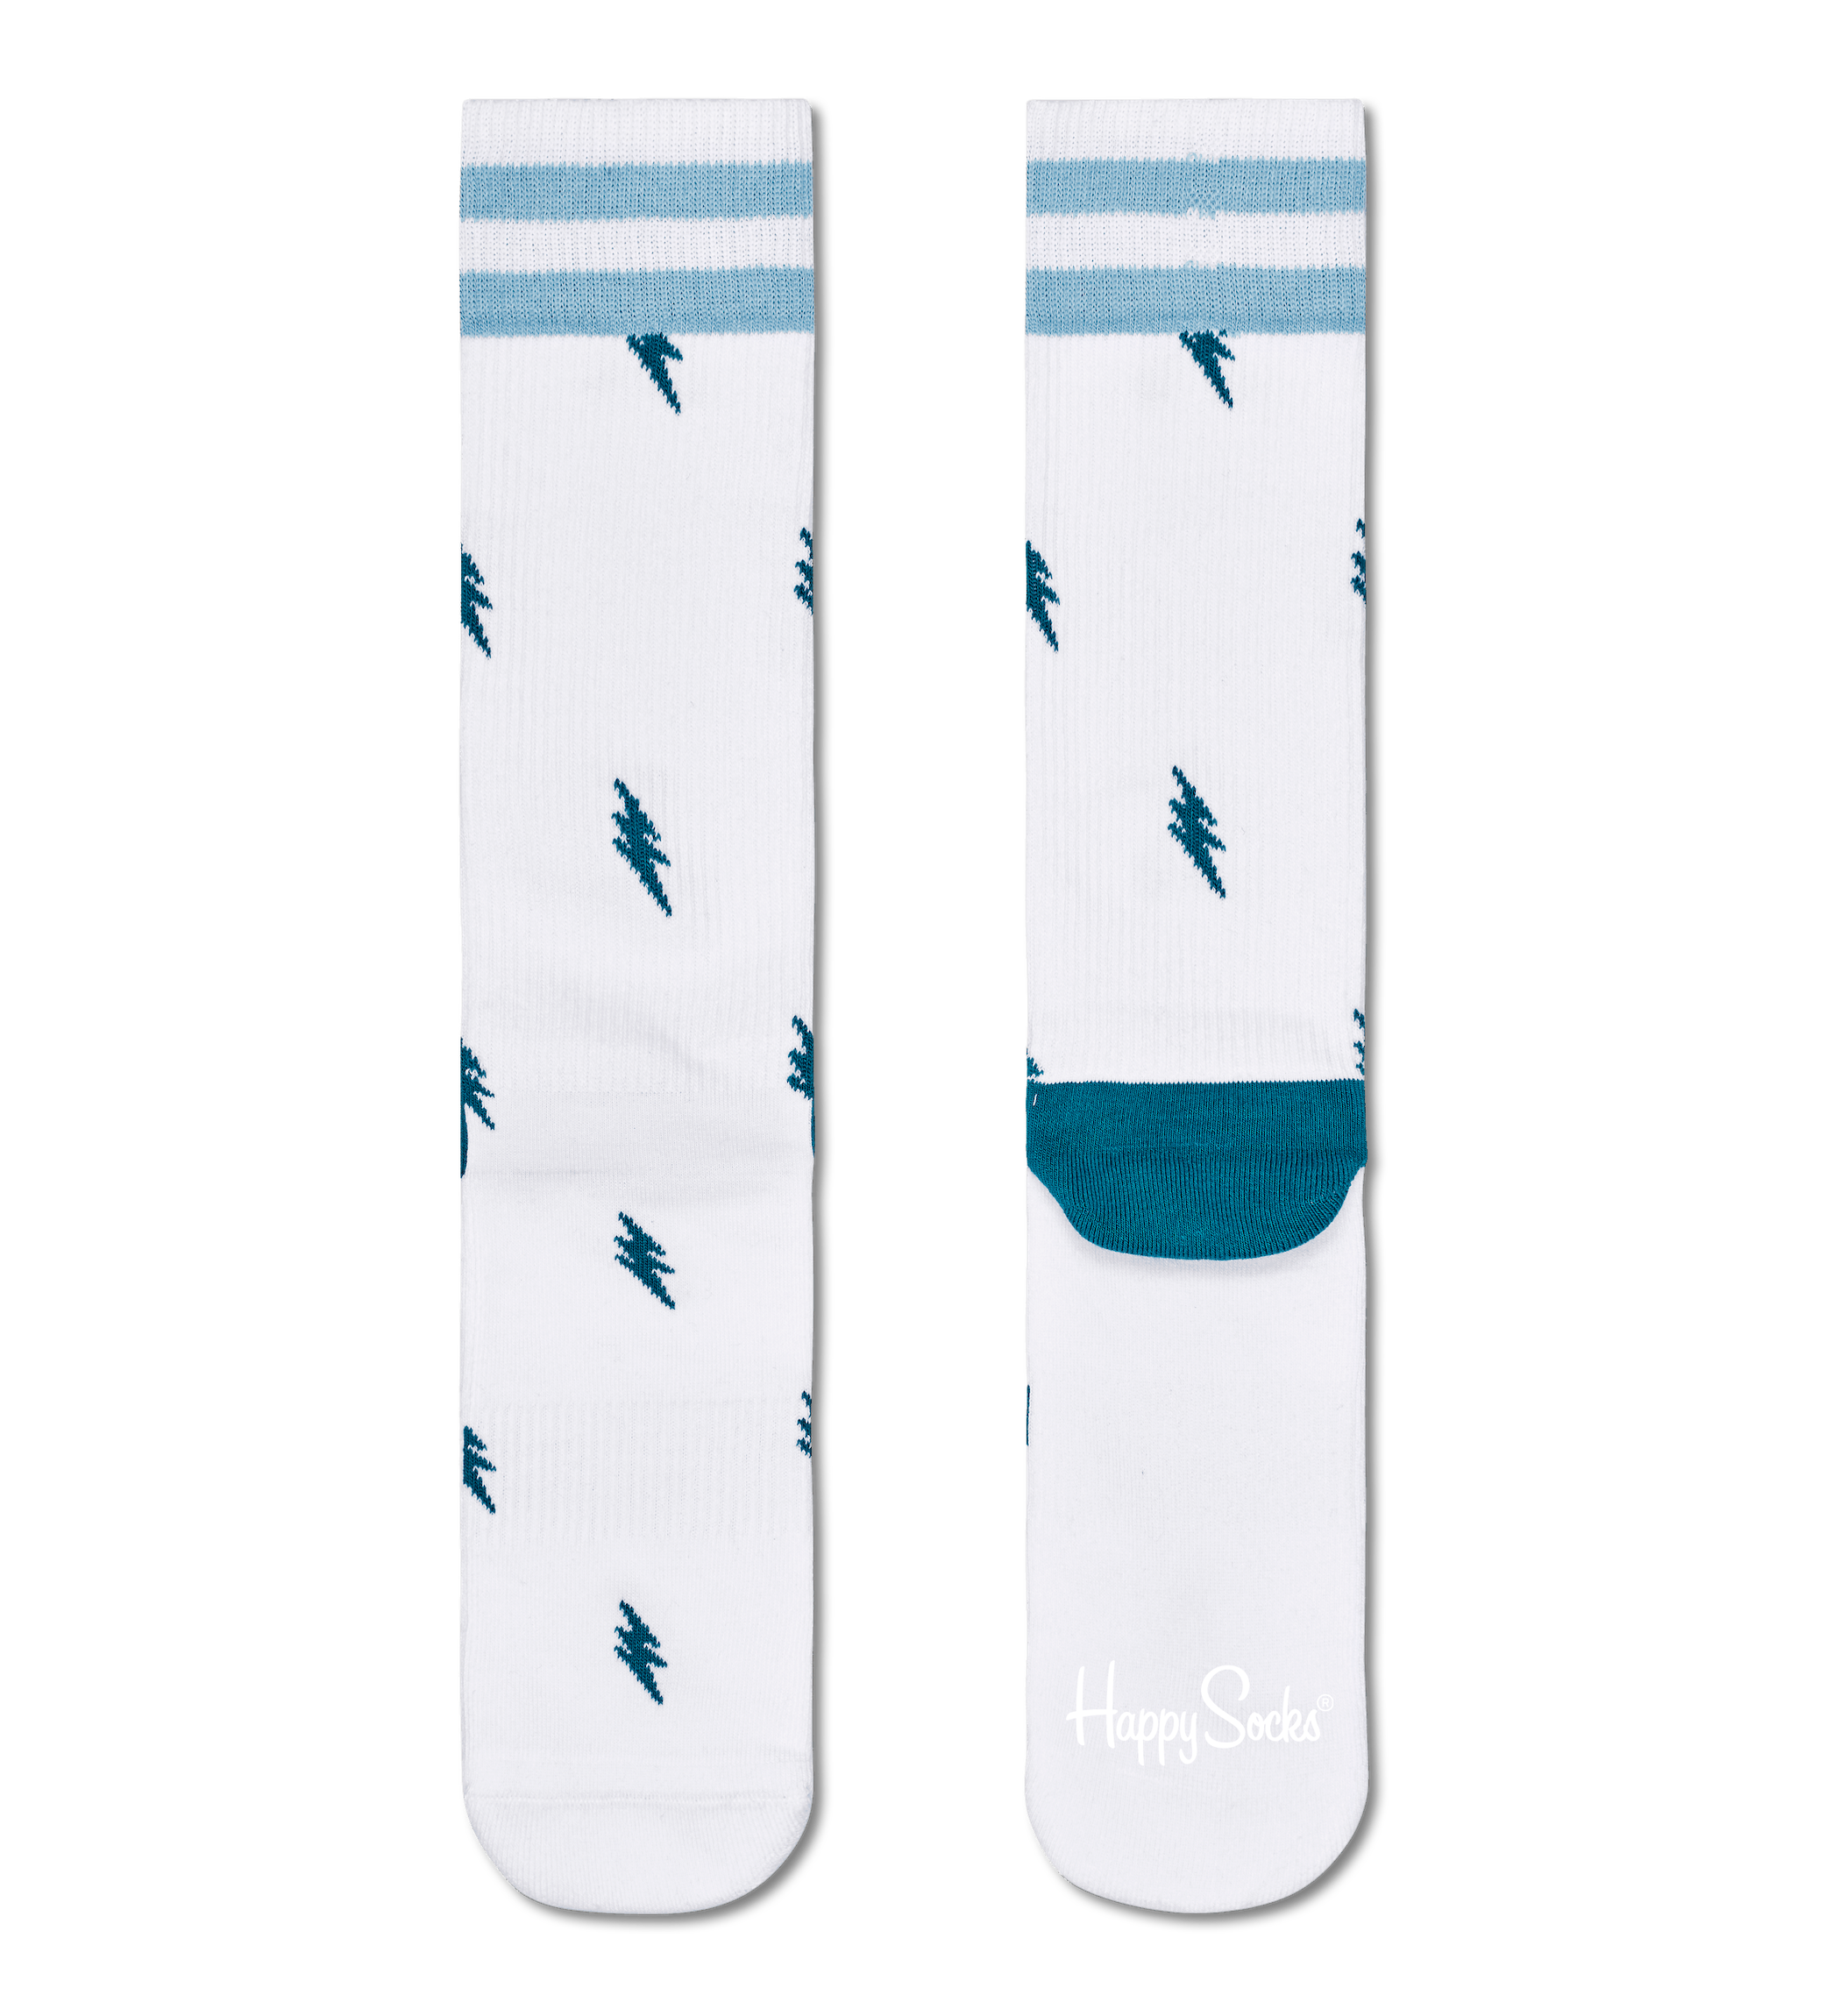 Bílé ponožky Happy Socks s blesky, vzor Small Flash // KOLEKCE ATHLETIC